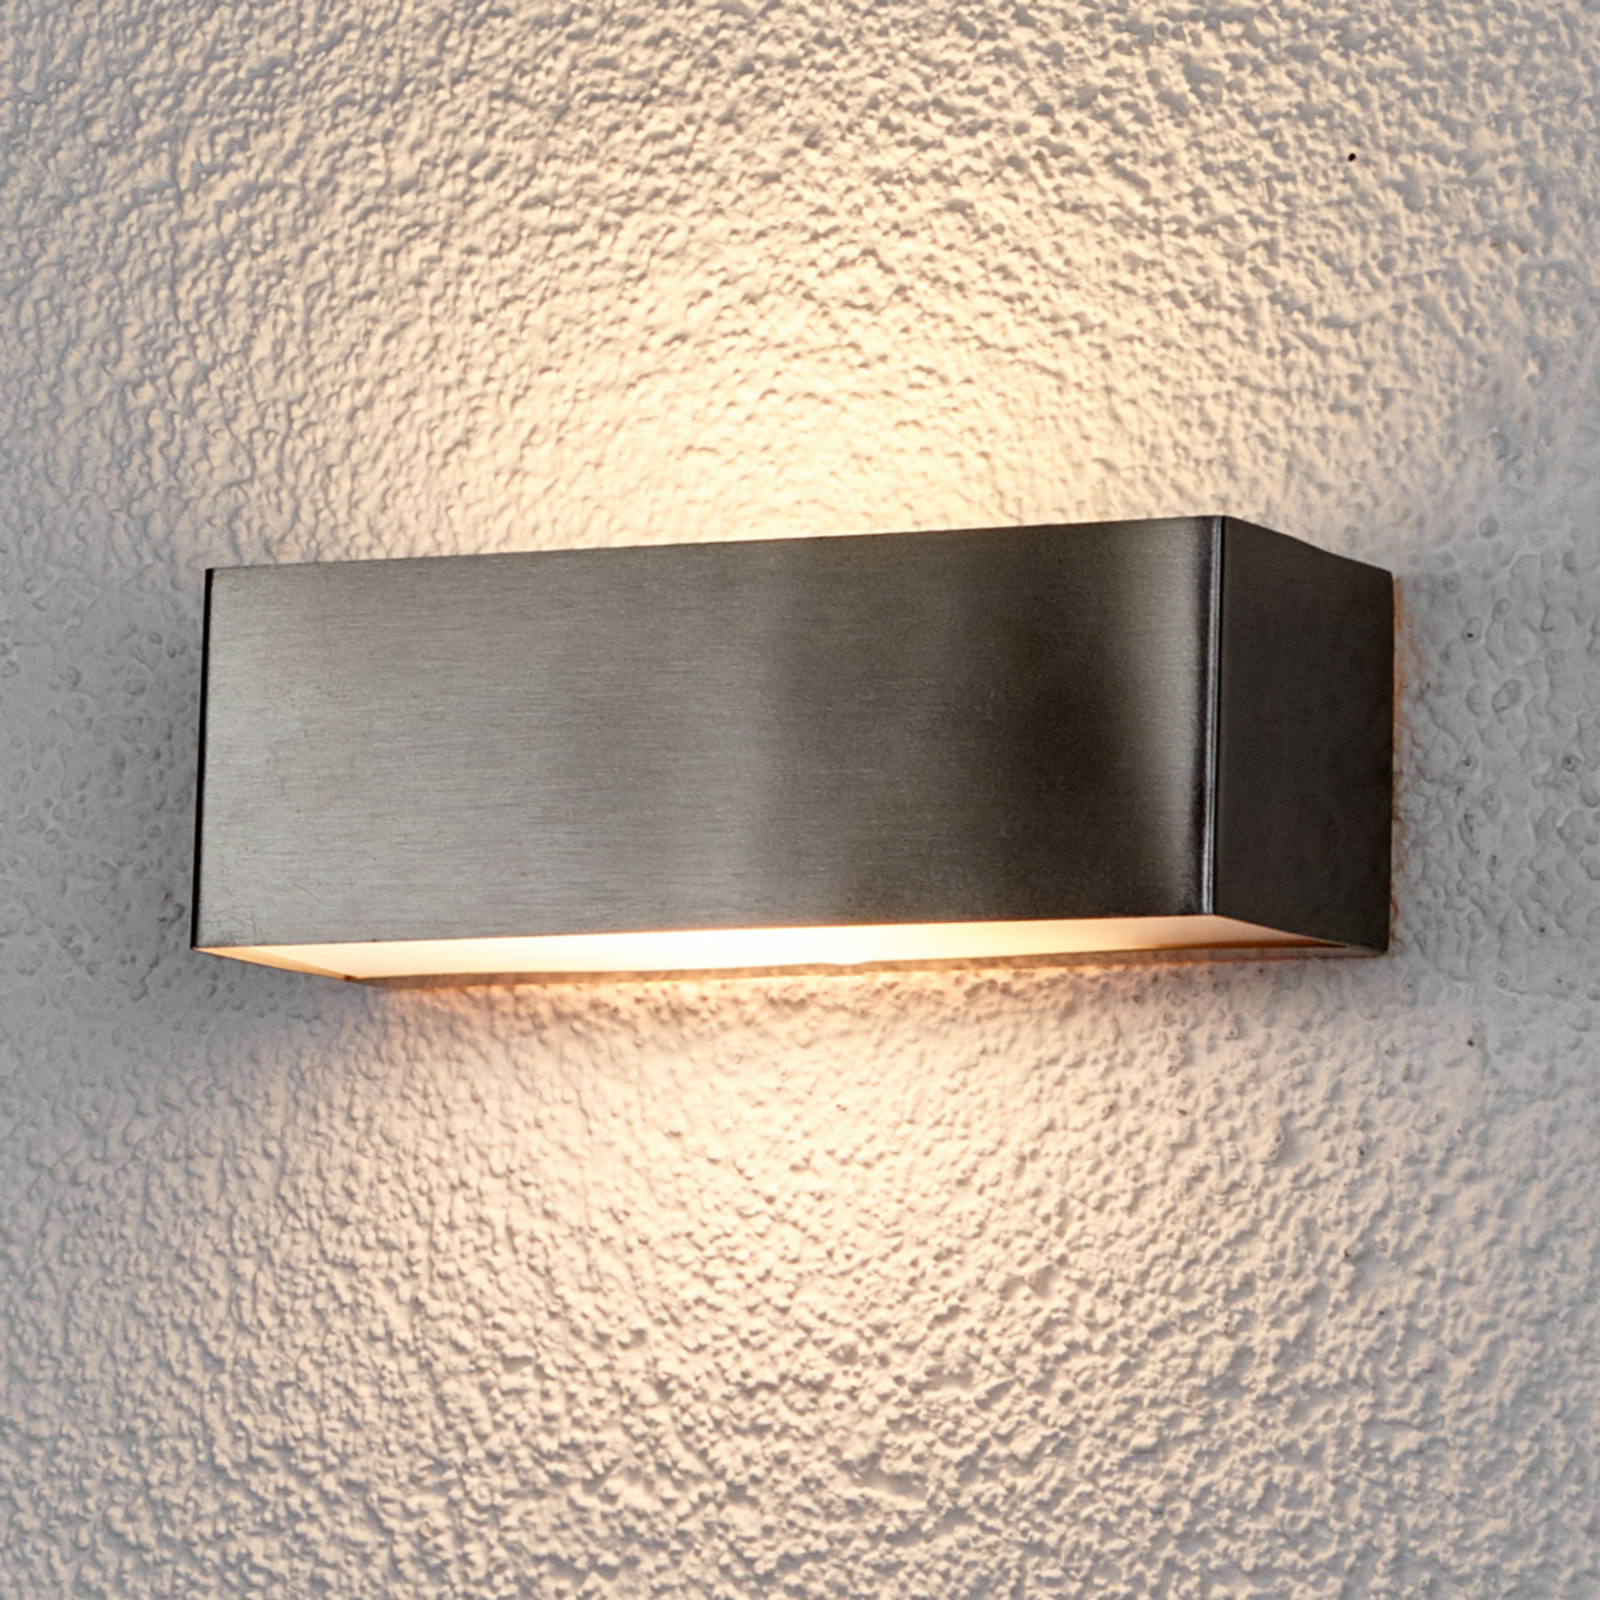 LED-muro exterior lámpara alicja acero inoxidable-muro exterior lámpara cuadrada muro exterior lámparas mundo 